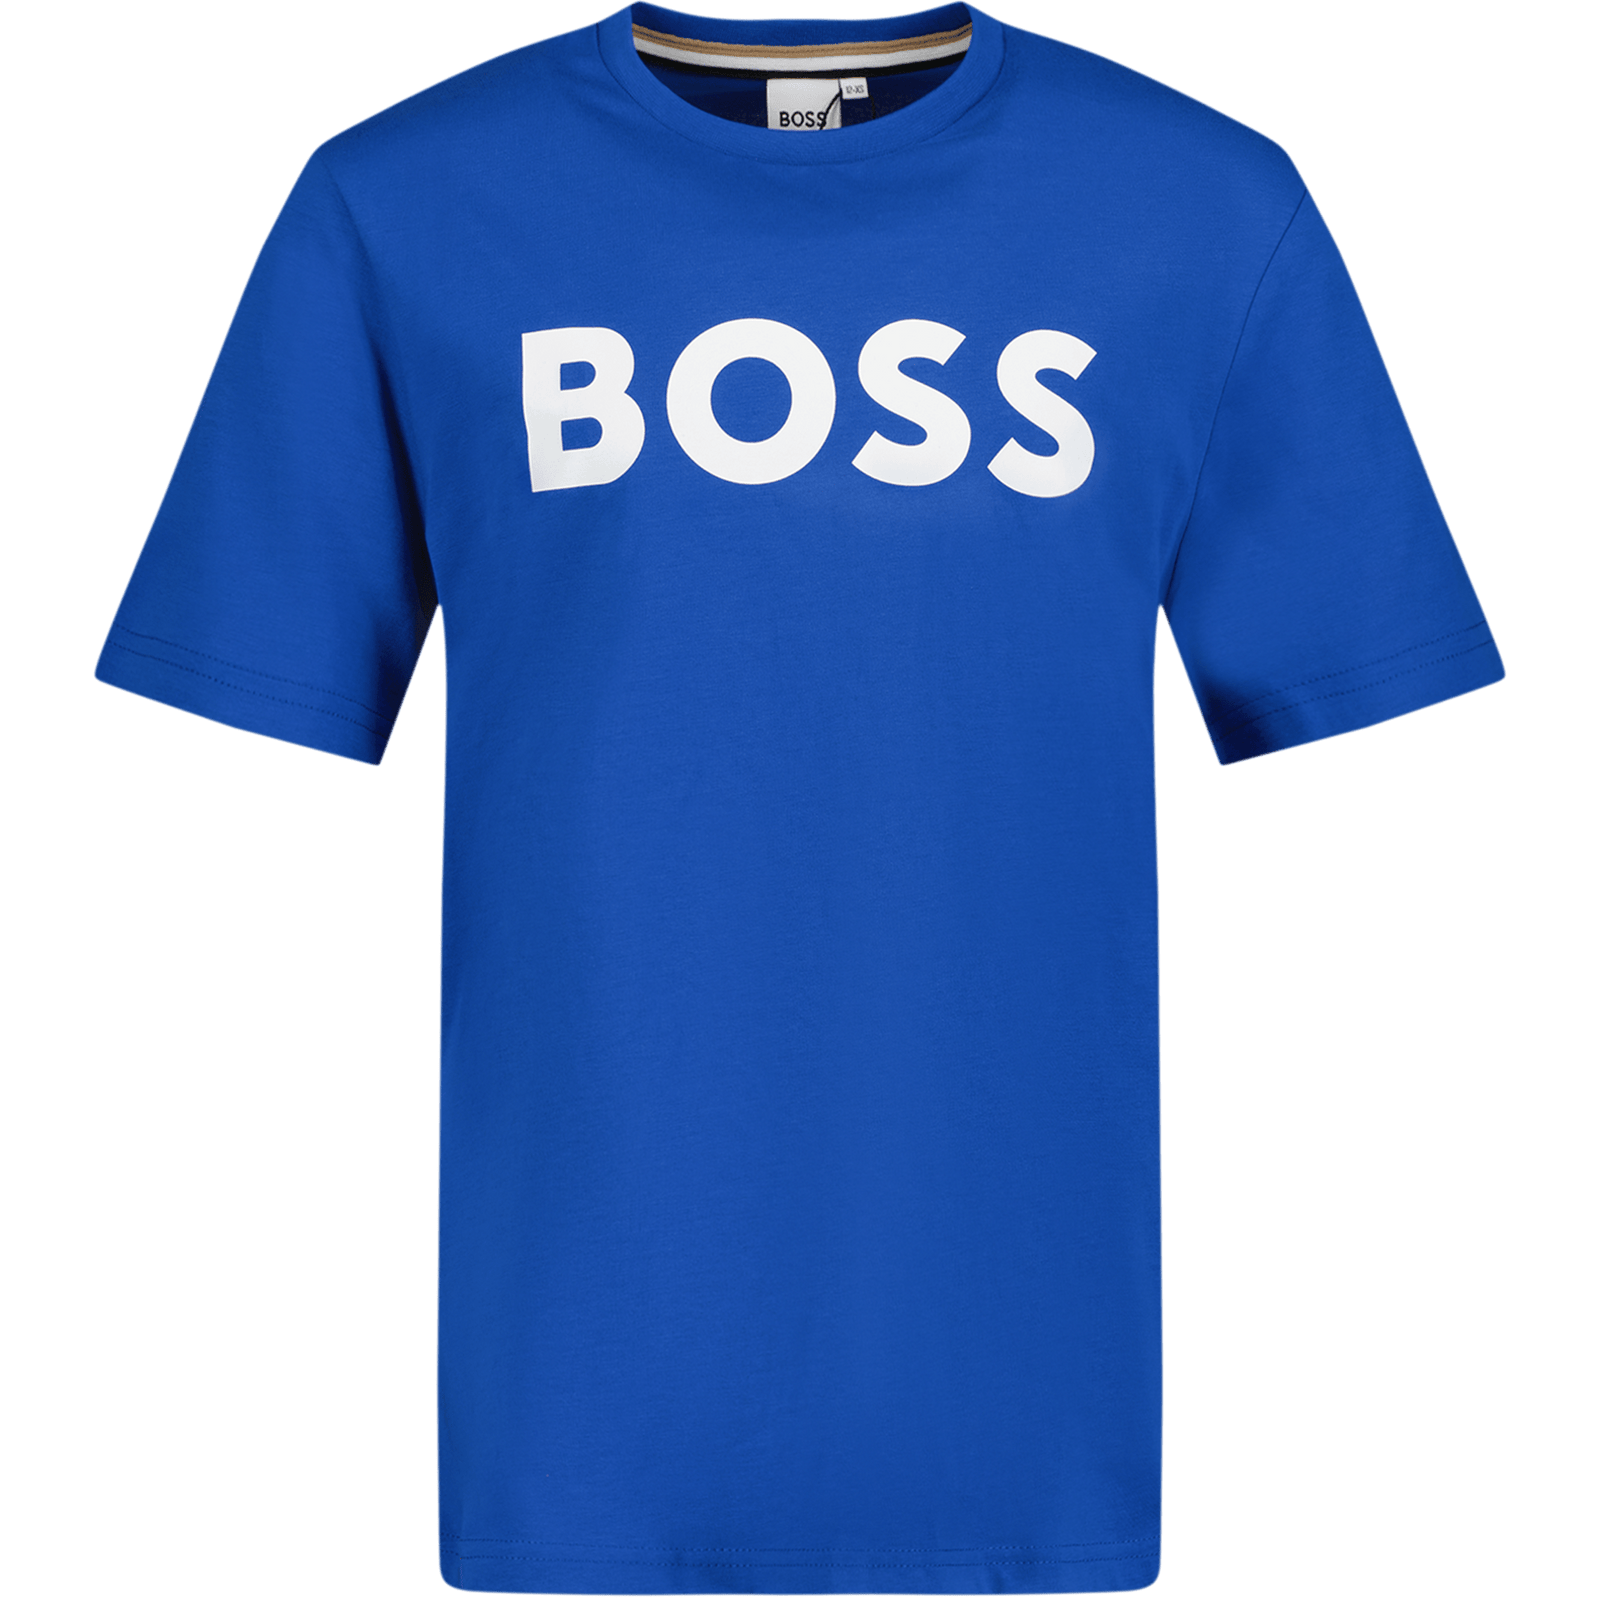 Boss Kinder Jongens T-Shirt Cobalt Blauw 4Y